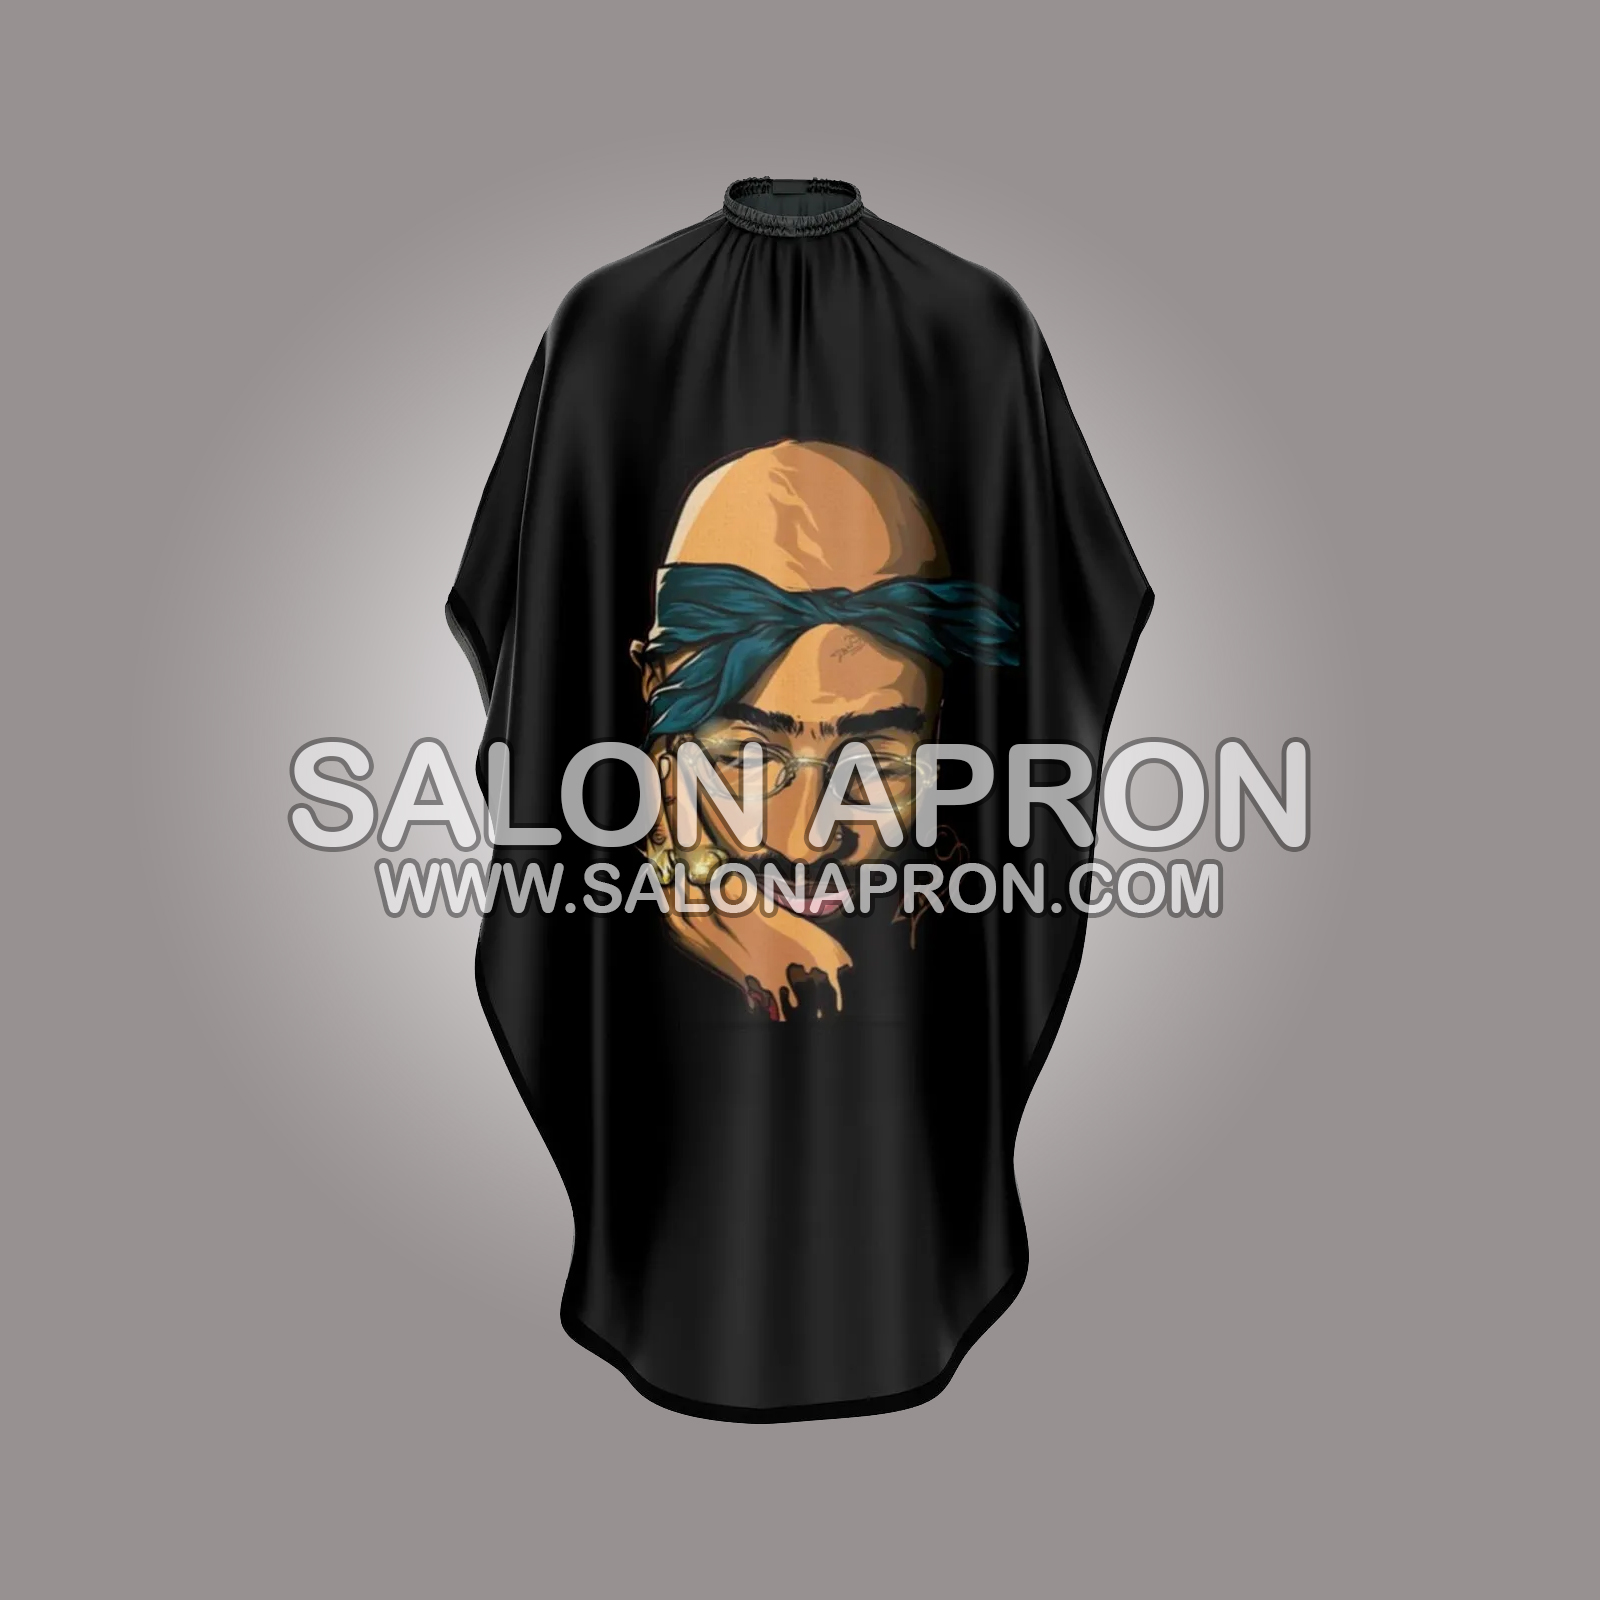 Barber Loco - Skull Barber Cape (MQS-BC-01) – Agenda Salon Concepts